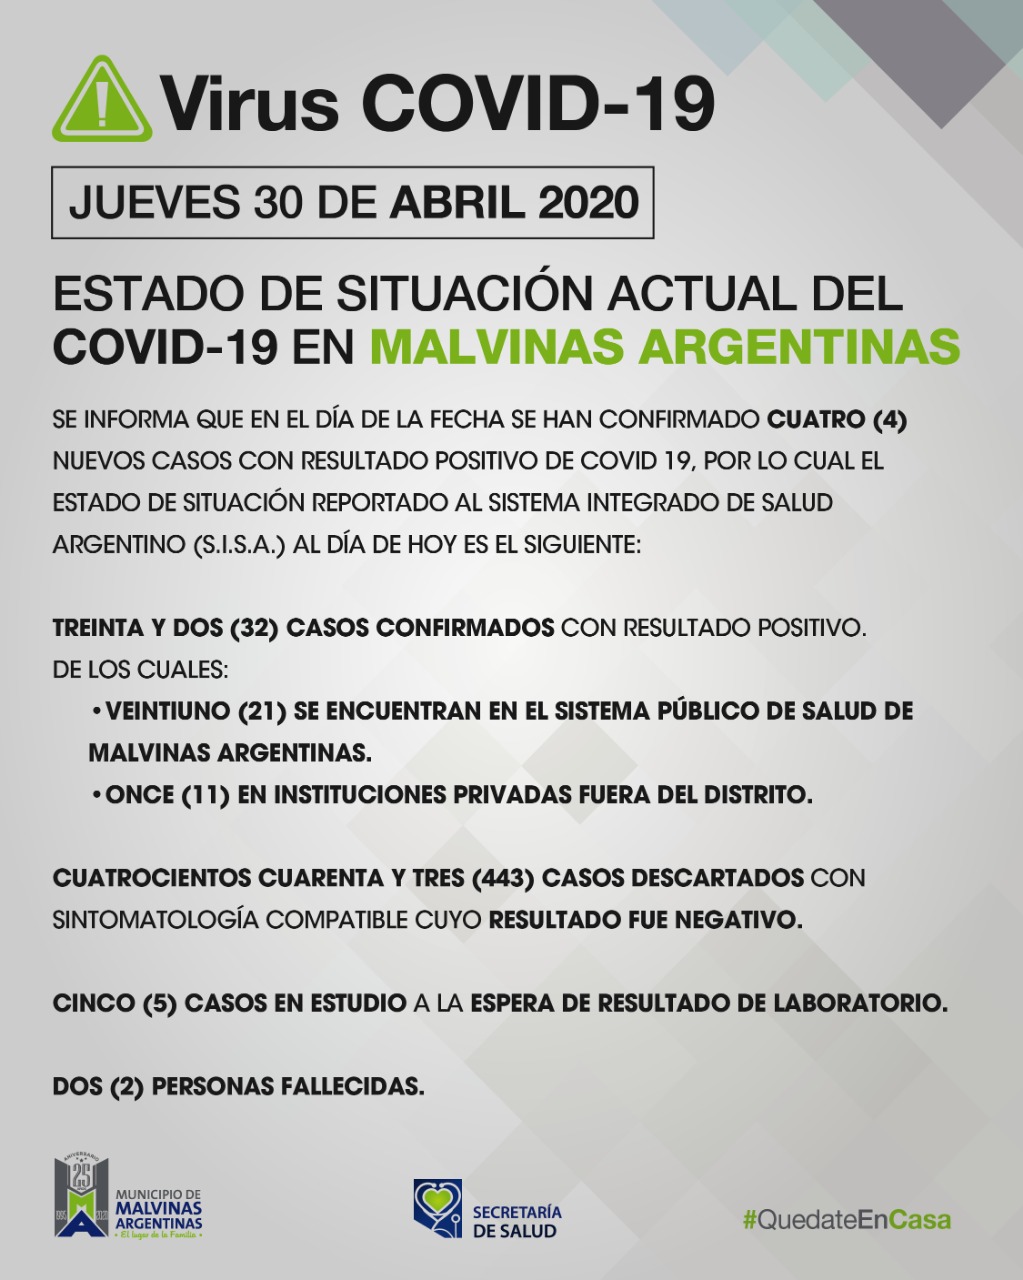 Malvinas Argentinas. Cuatro nuevos casos de COVID-19 hoy. Covid_24